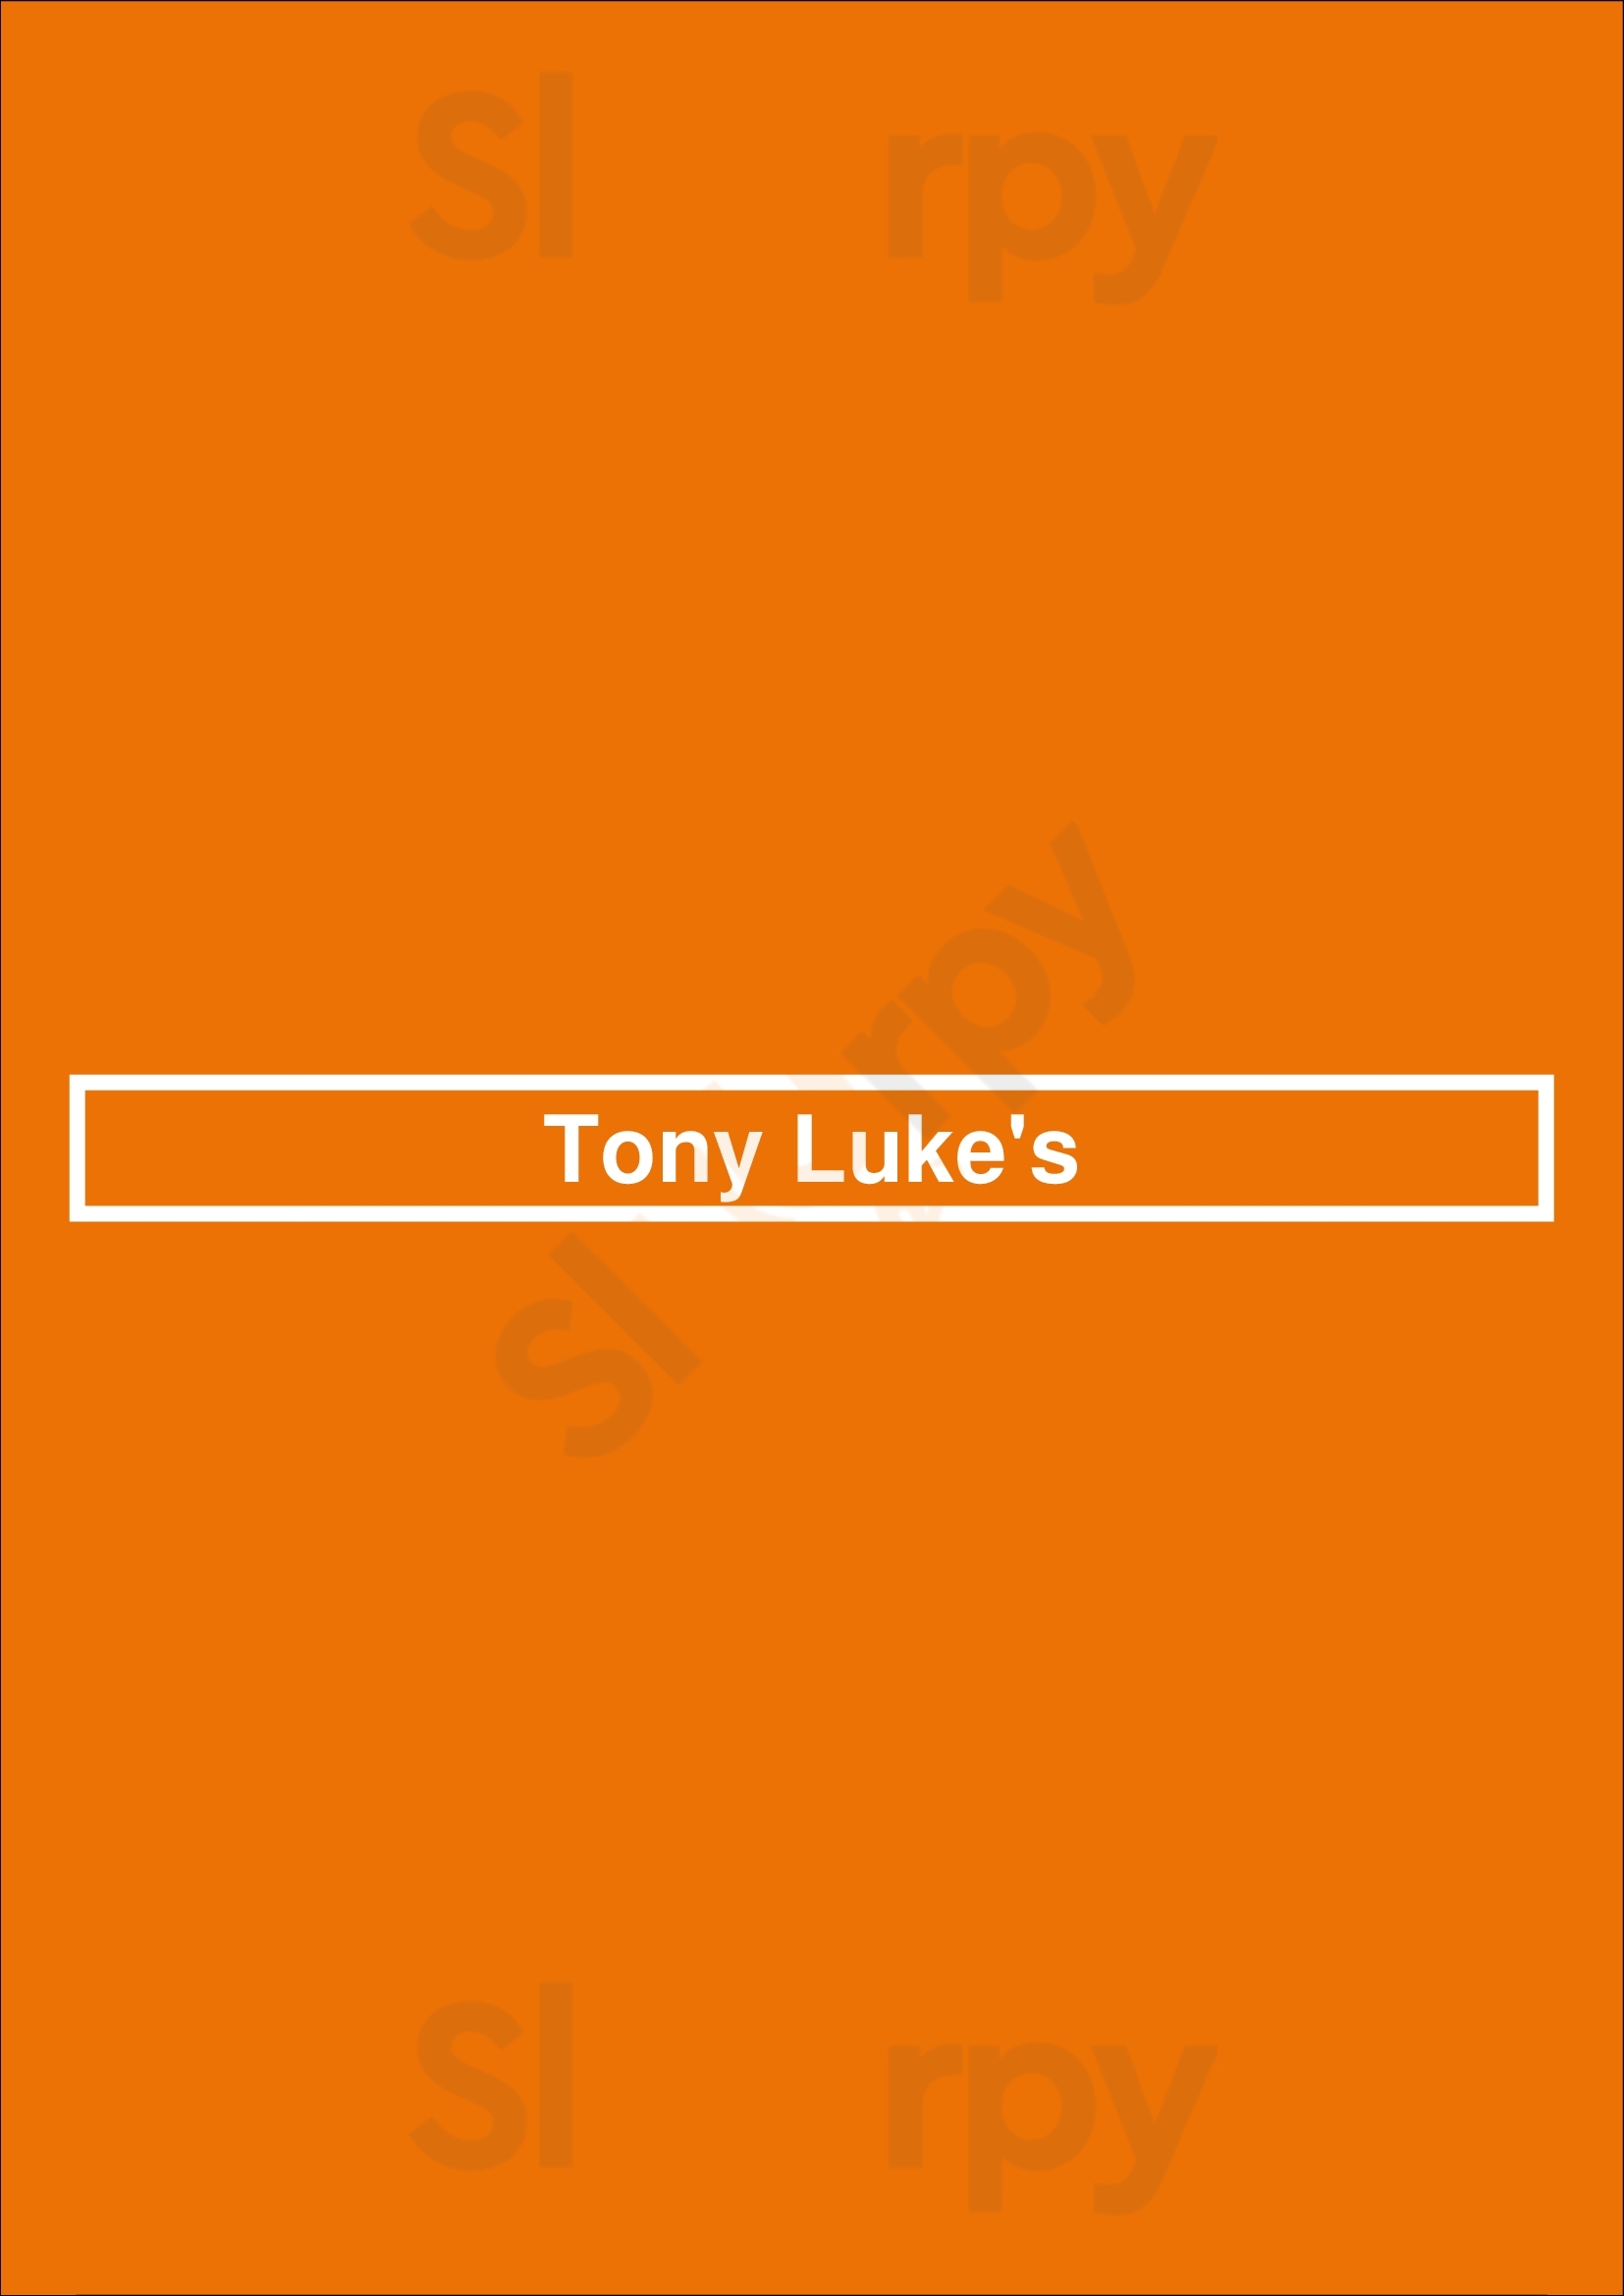 Tony Luke's Brooklyn Menu - 1